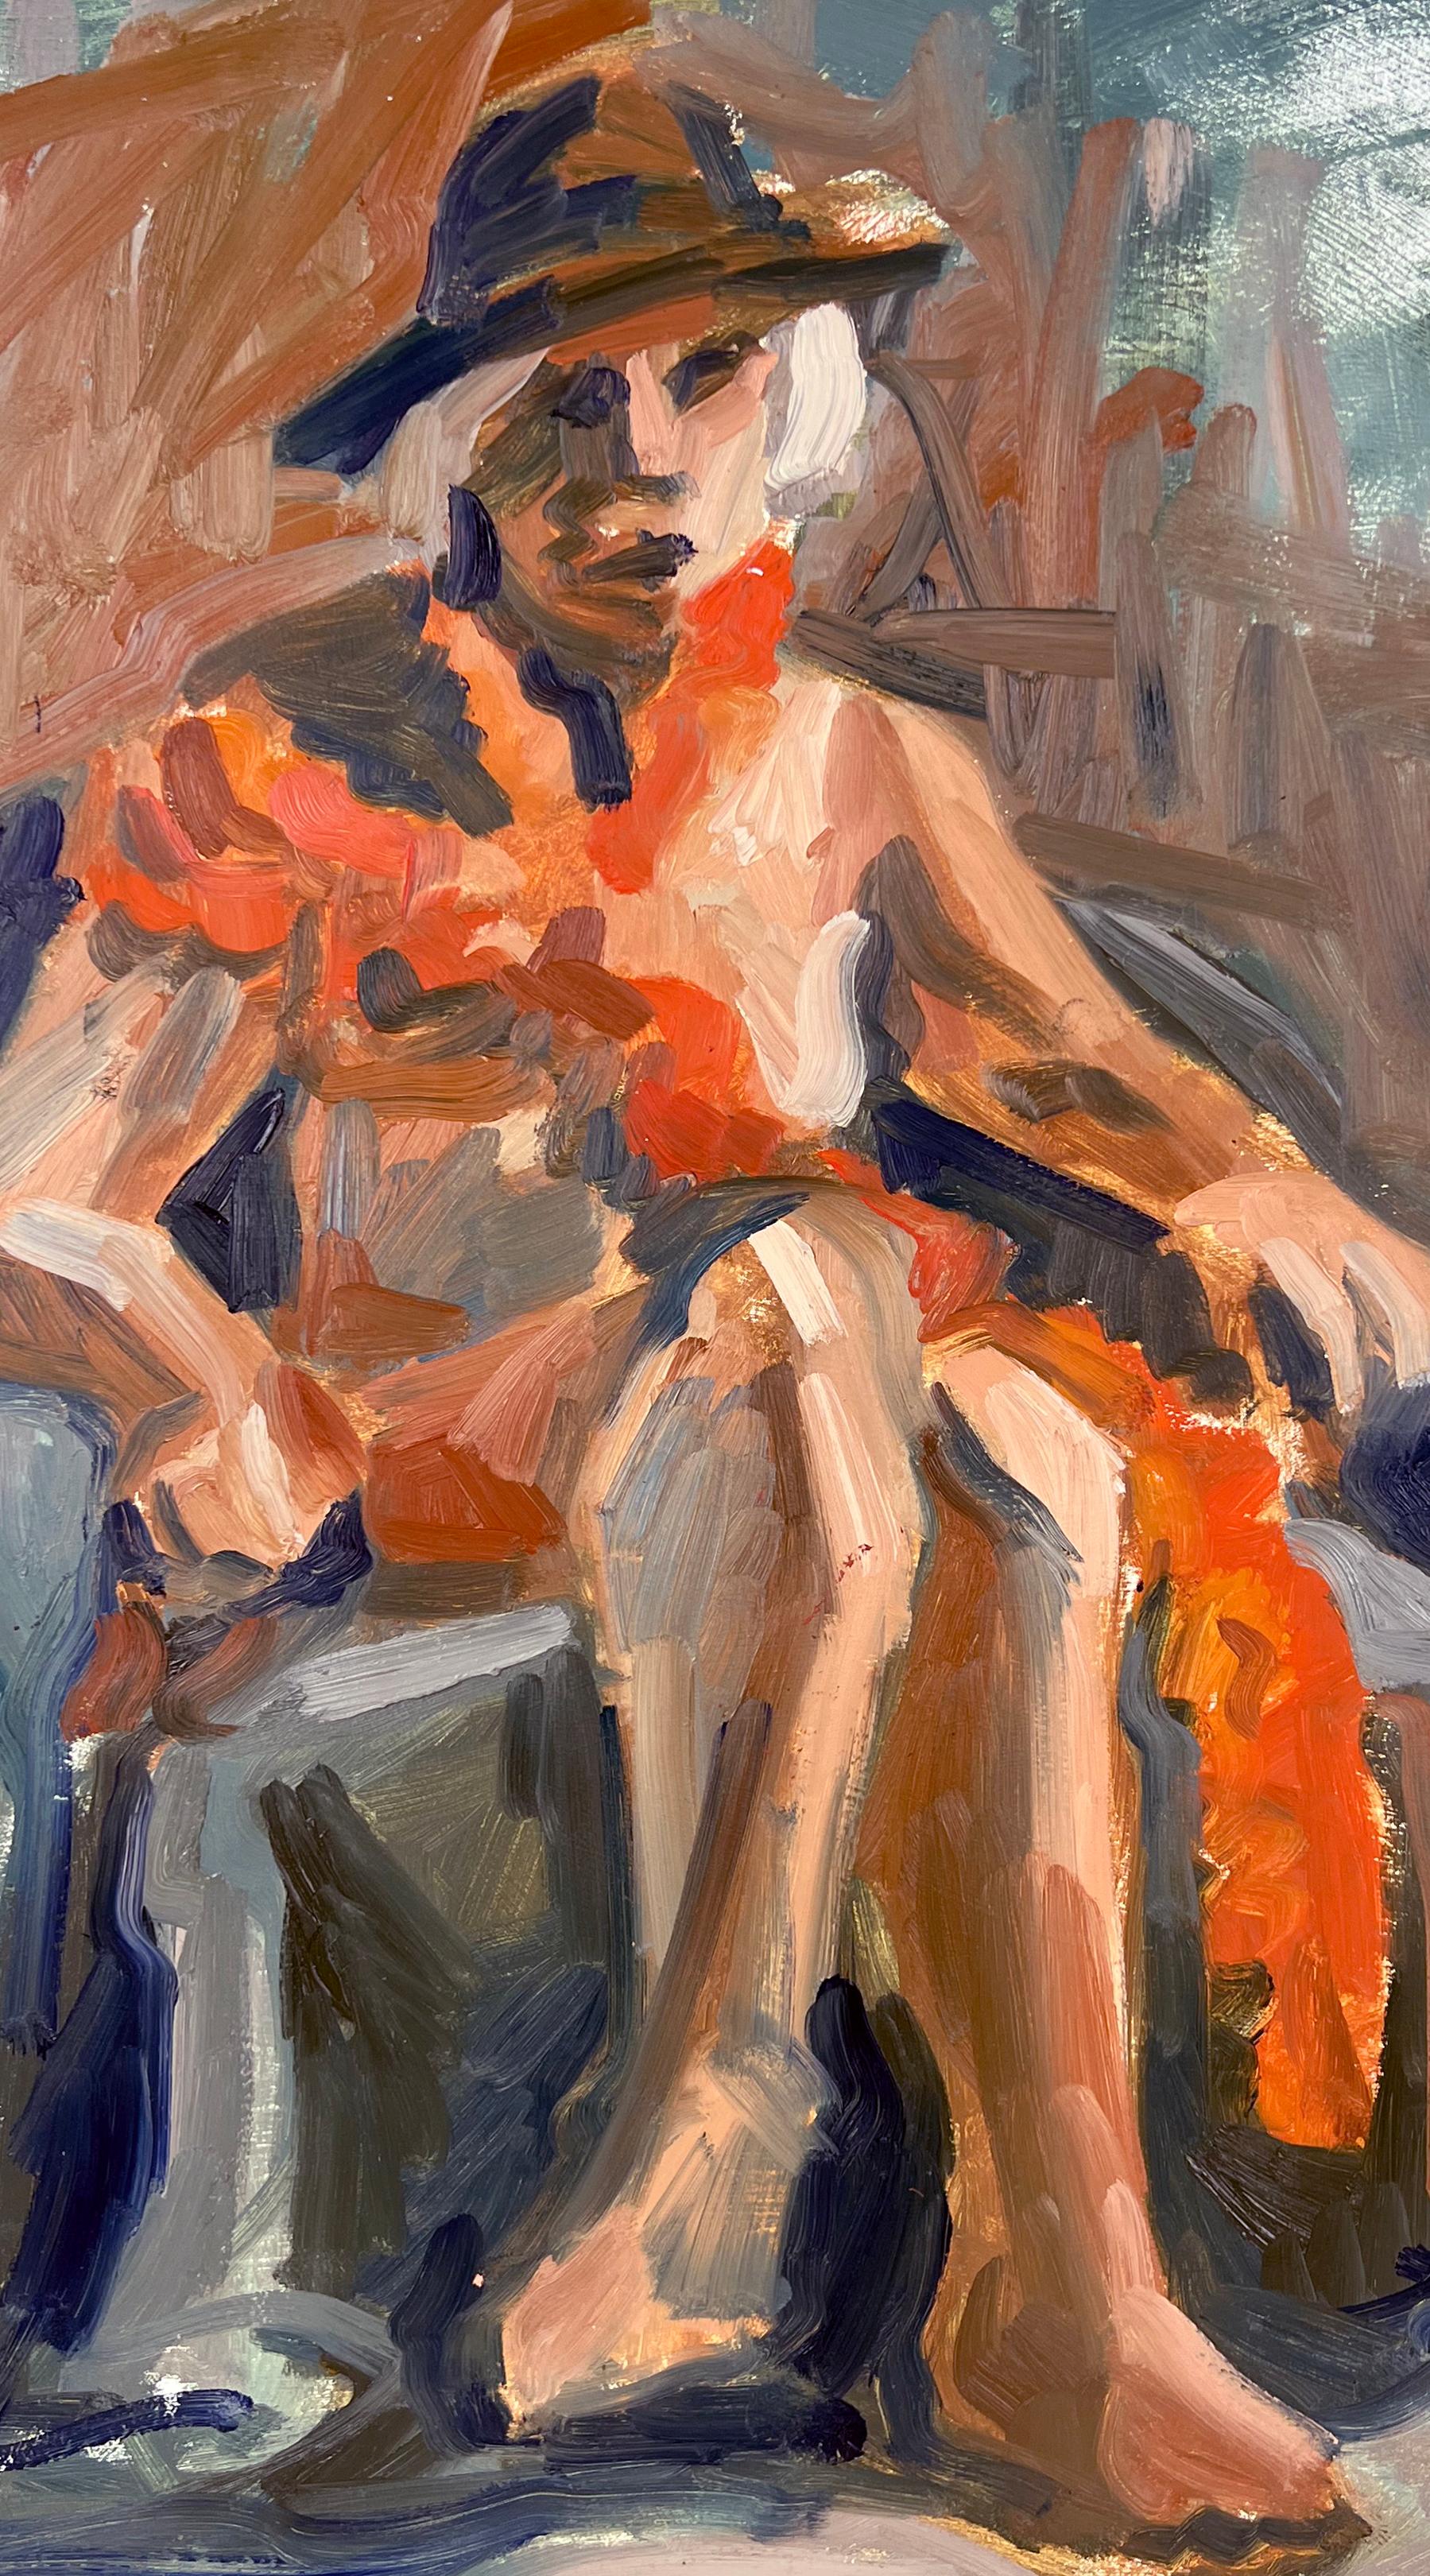 Femme nue assise Bay Area Figurative School Abstract Expressionist

Femme assise, un portrait abstrait de l'artiste de Santa Cruz et de San Francisco Heather Speck (américaine, B-1978). Le sujet est peint avec des couleurs vives et de larges touches